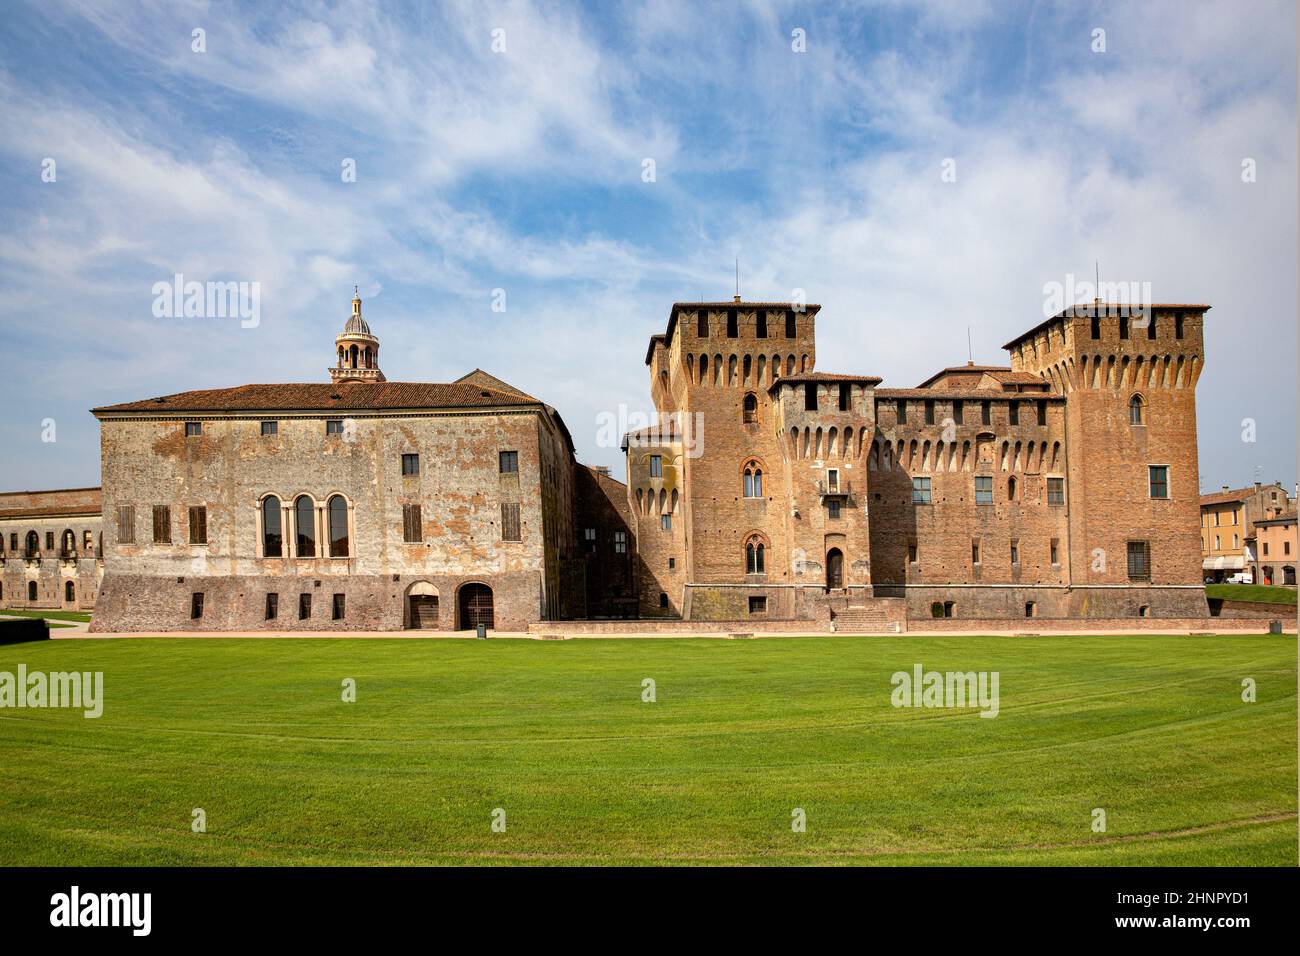 Forteresse médiévale, Gonzague Saint George (Giorgio) château en Italie, Mantoue (Mantova) Banque D'Images